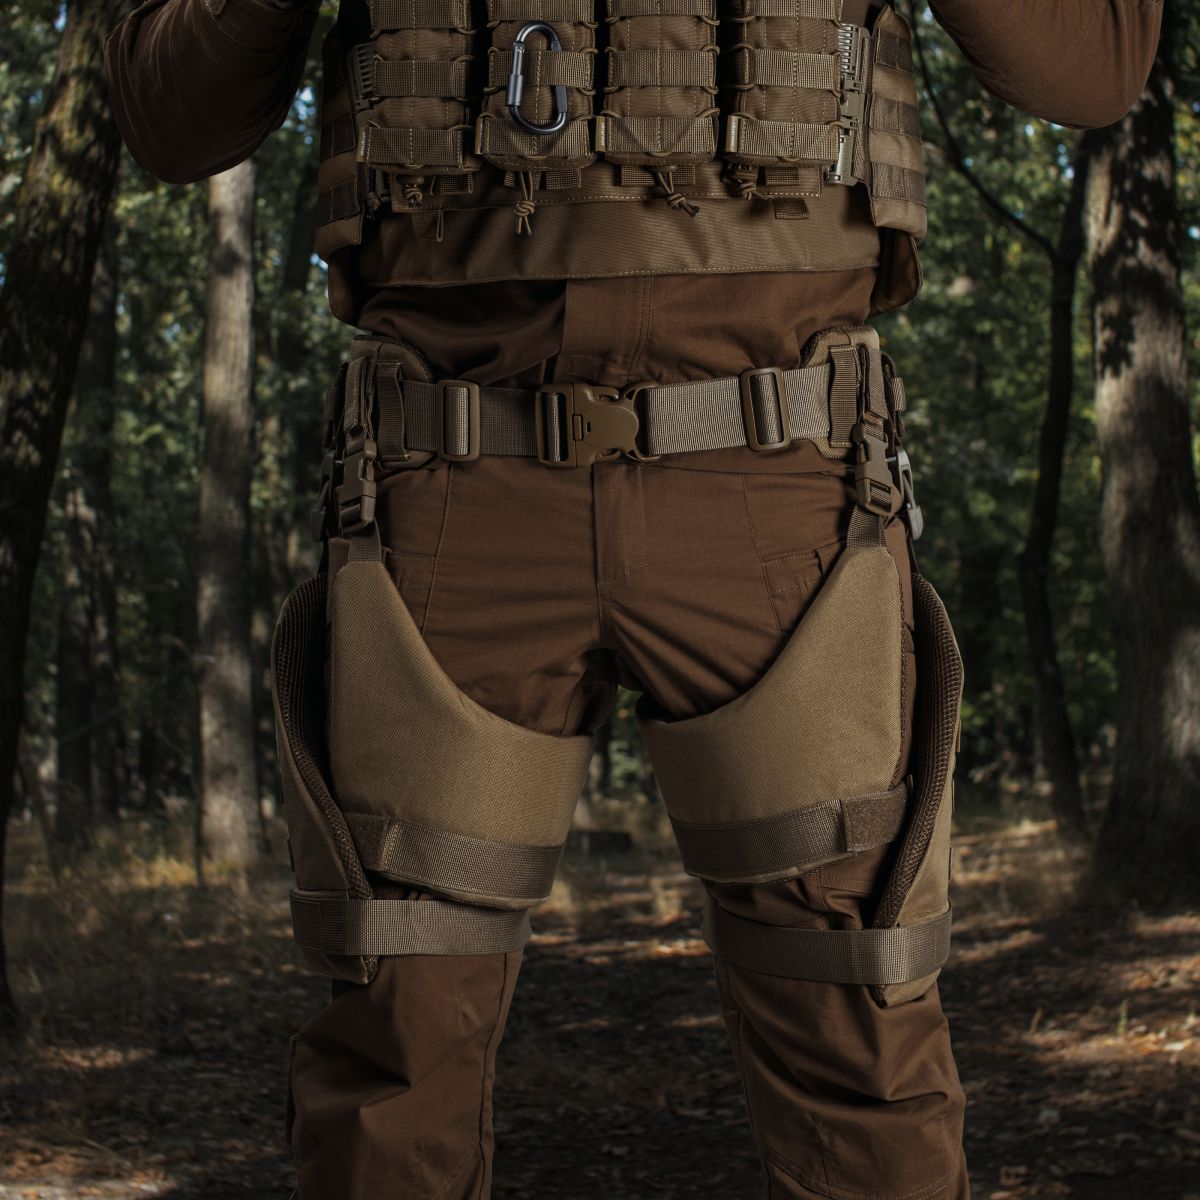 Бронекостюм A.T.A.S. (Advanced Tactical Armor Suit) Level I. Класс защиты – 1. Койот. S/M 10